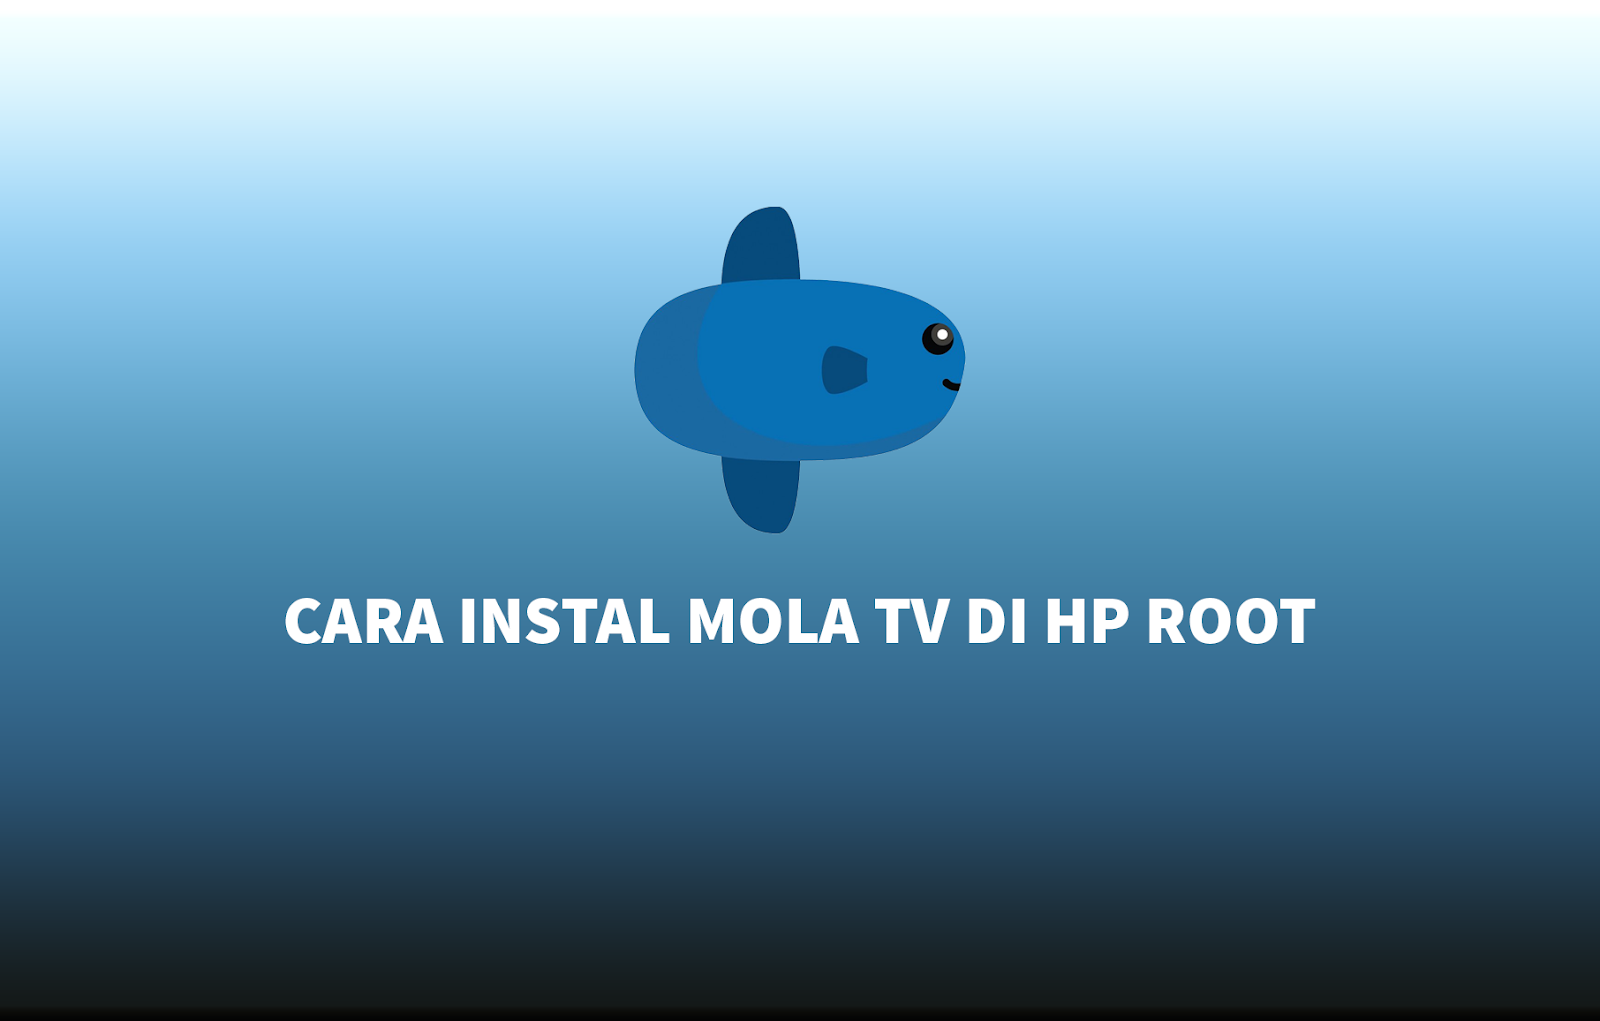 Cara Instal Mola Tv Di Hp Root